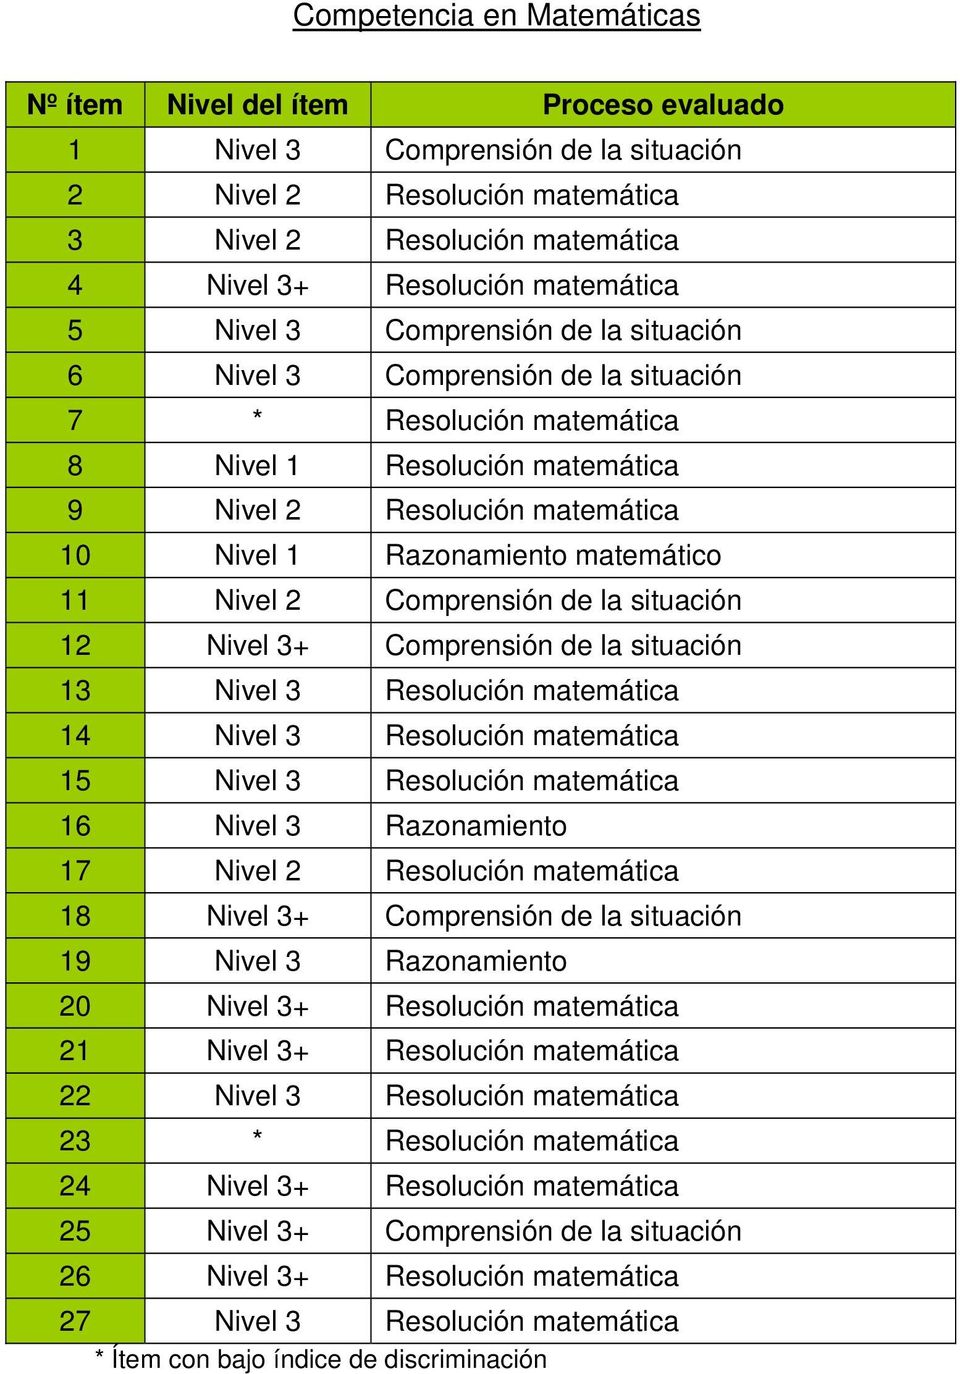 Razonamiento matemático 11 Nivel 2 Comprensión de la situación 12 Nivel 3+ Comprensión de la situación 13 Nivel 3 Resolución matemática 14 Nivel 3 Resolución matemática 15 Nivel 3 Resolución